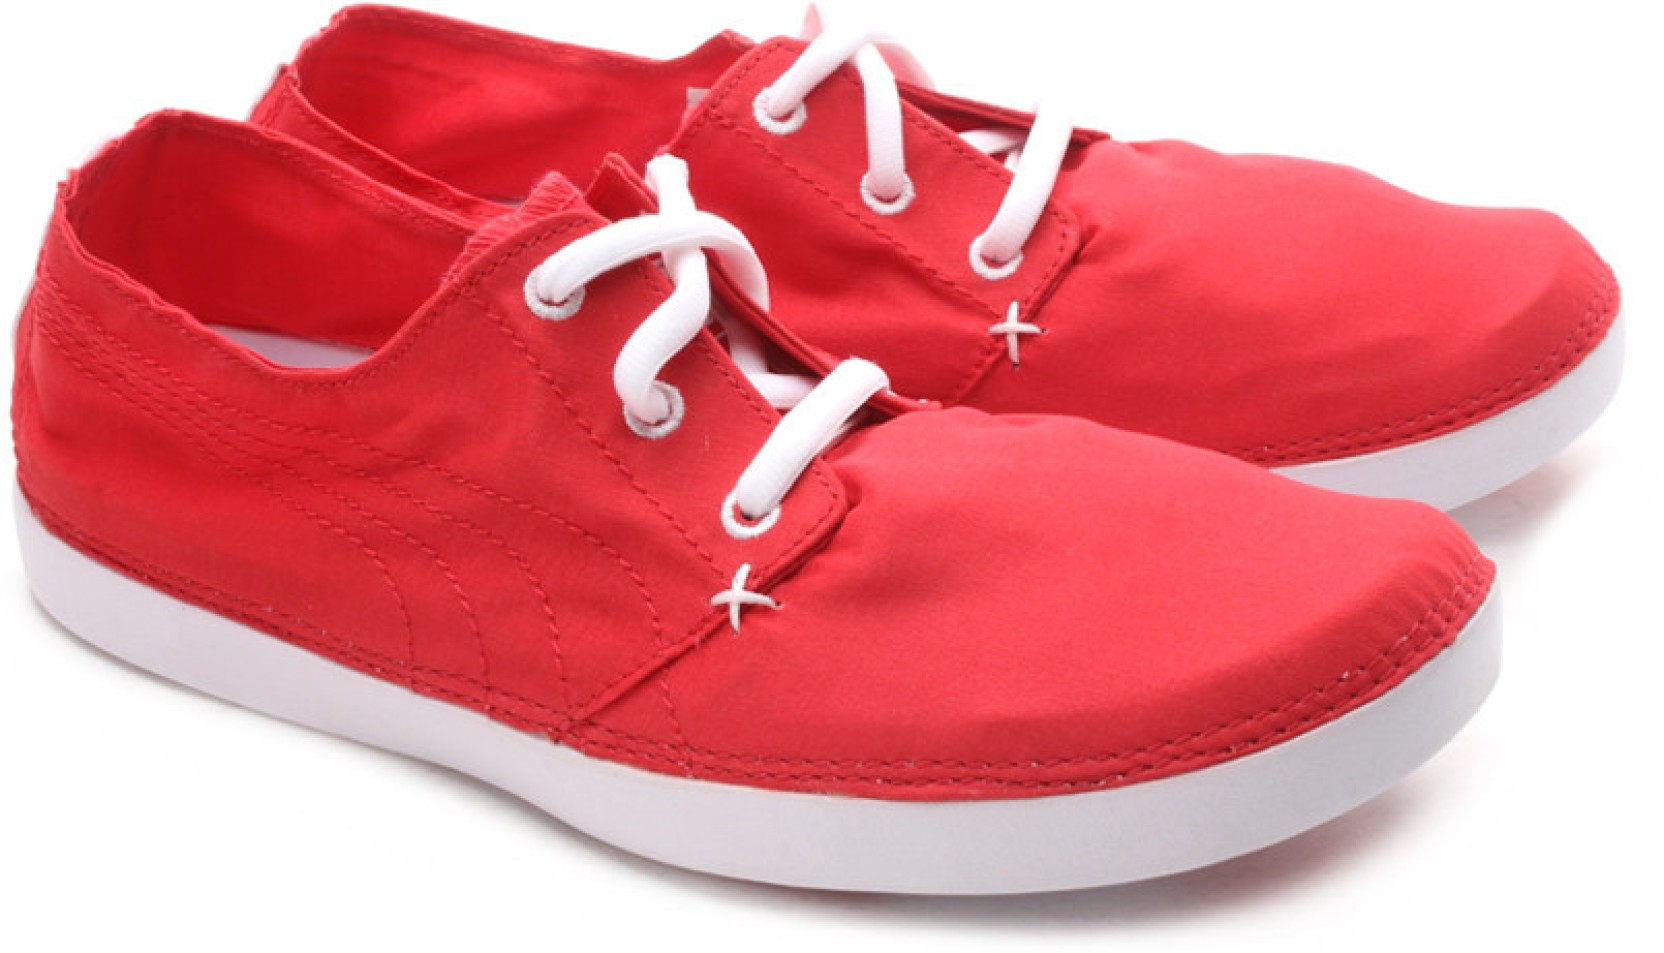 Puma Tekkies Lite Sneakers - Buy Red Color Puma Tekkies Lite Sneakers ...